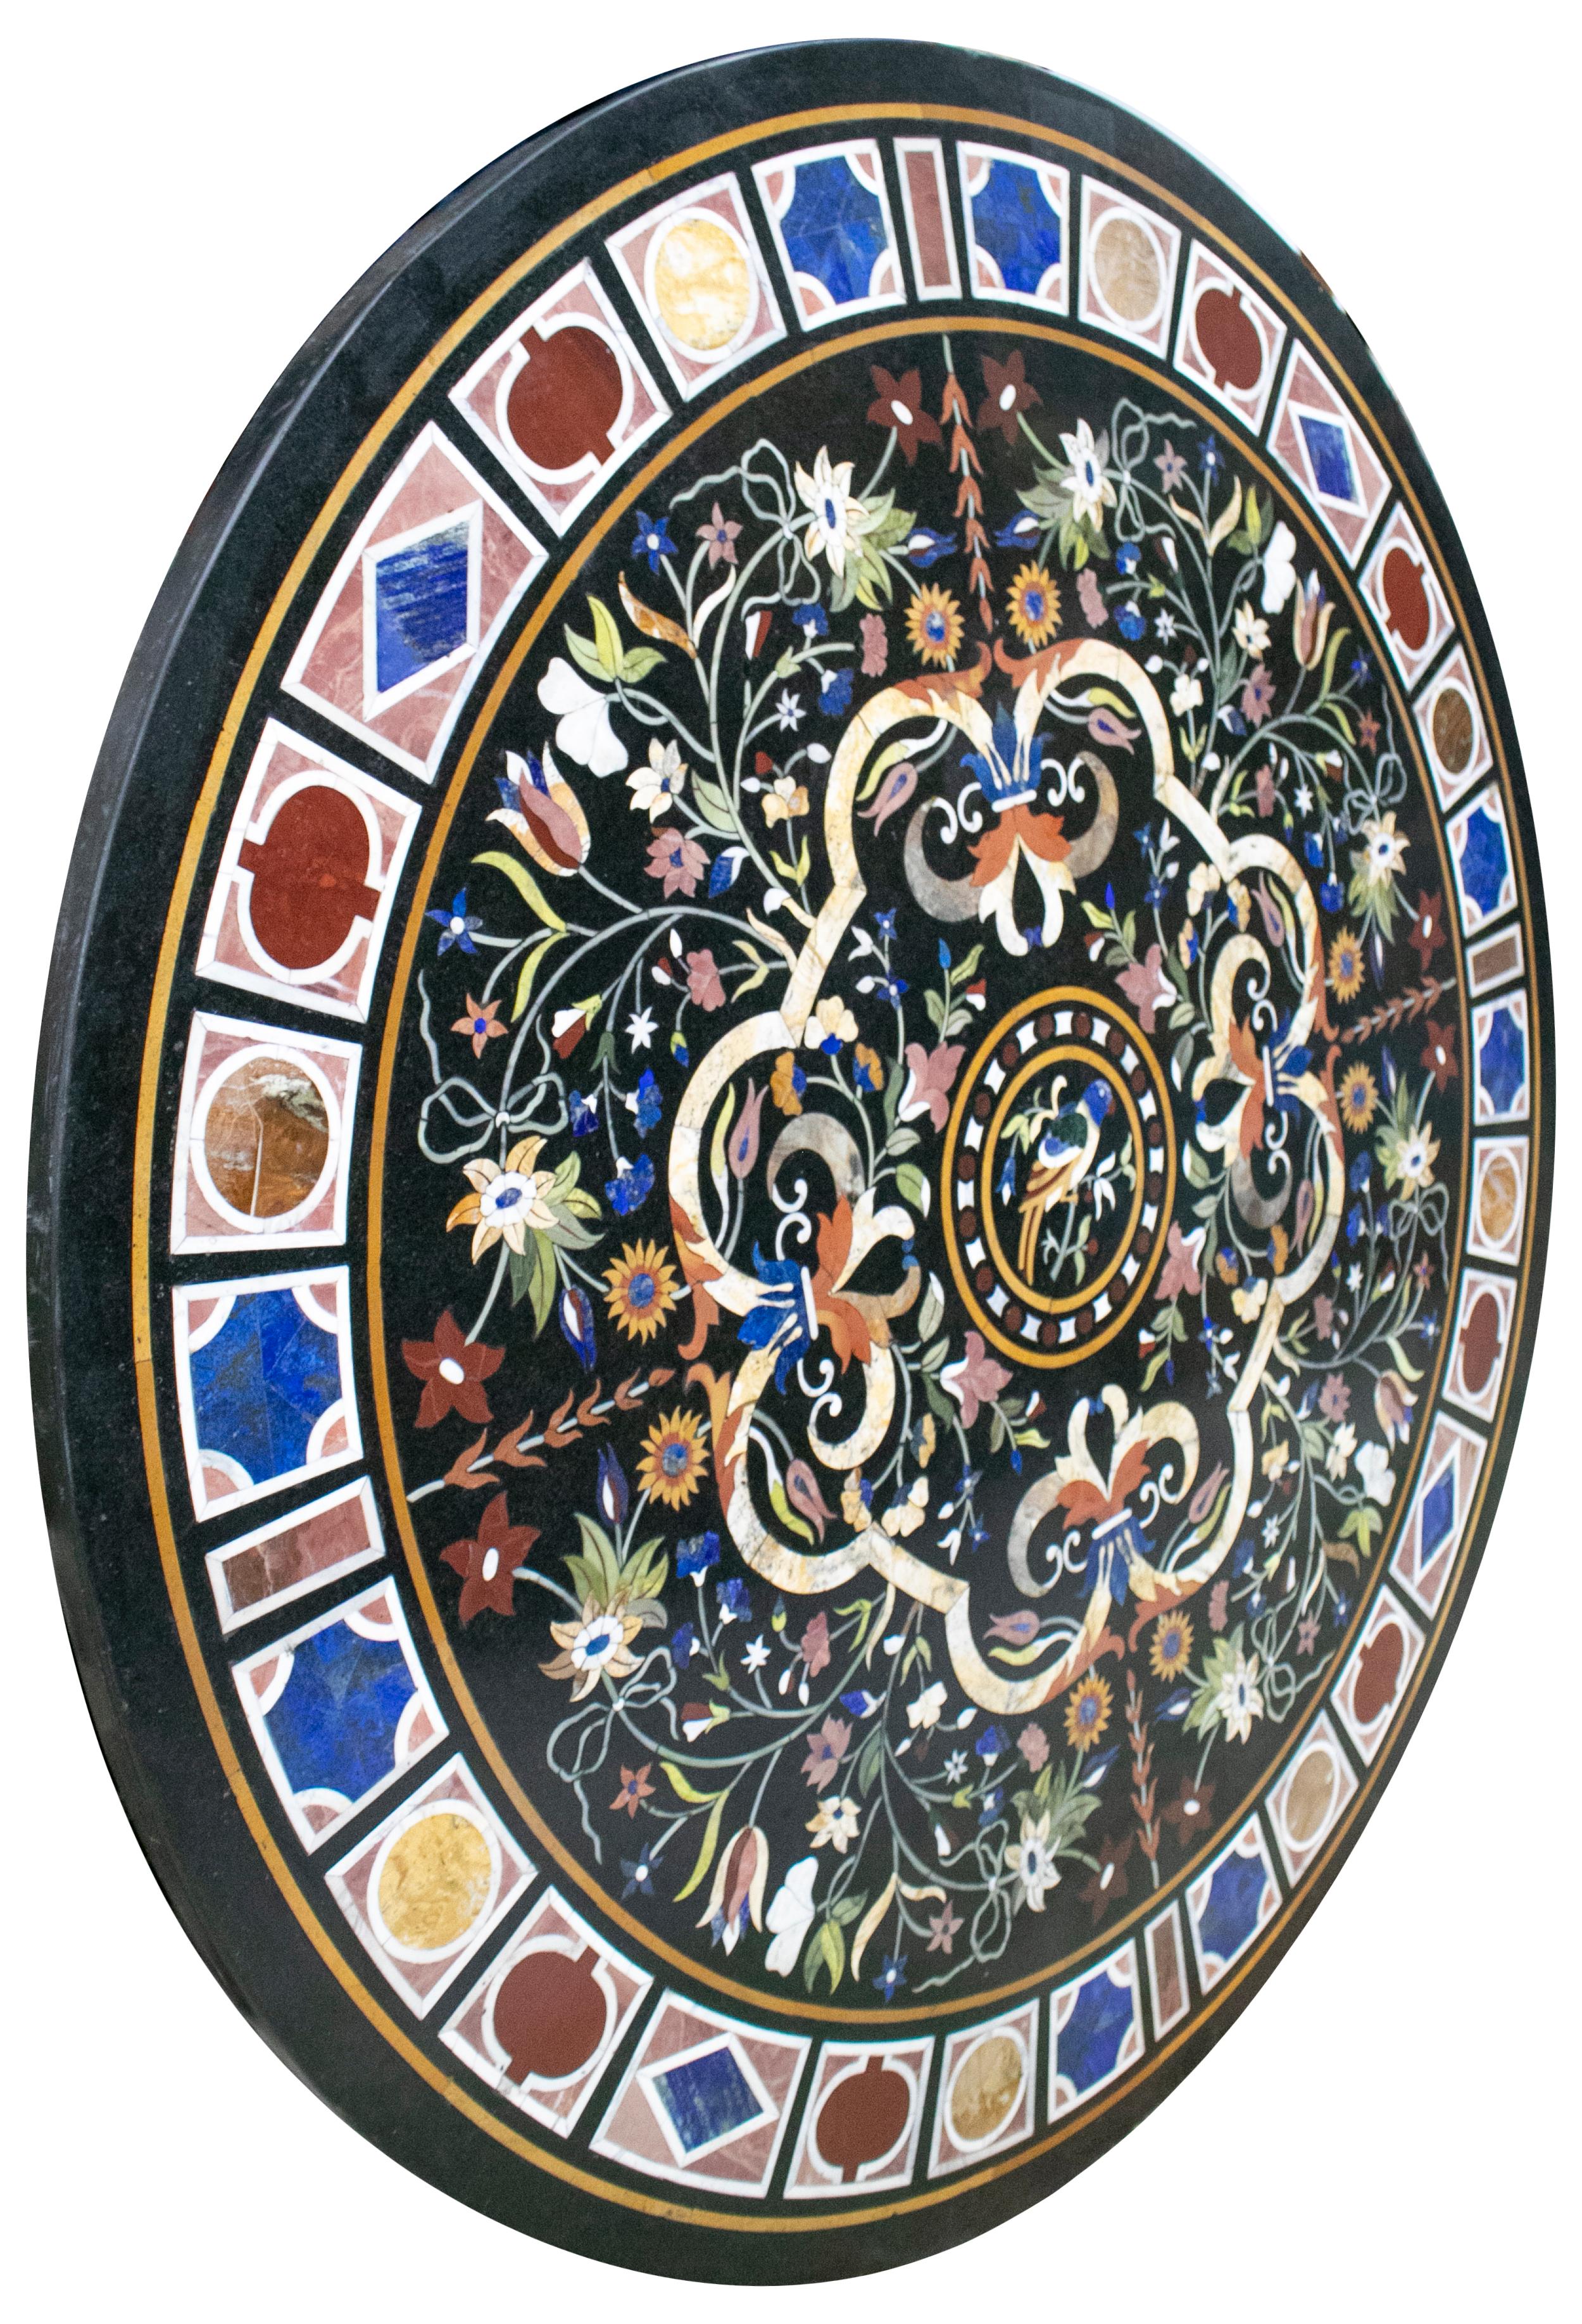 Klassische italienische Tischplatte aus schwarzem Marmor aus Pietra Dura-Stein, verziert mit einem Vogel, umgeben von Blumendekor und einem geometrischen Rahmen. Handgefertigte Mosaikeinlage aus blauem Lapislazuli und einer Auswahl von